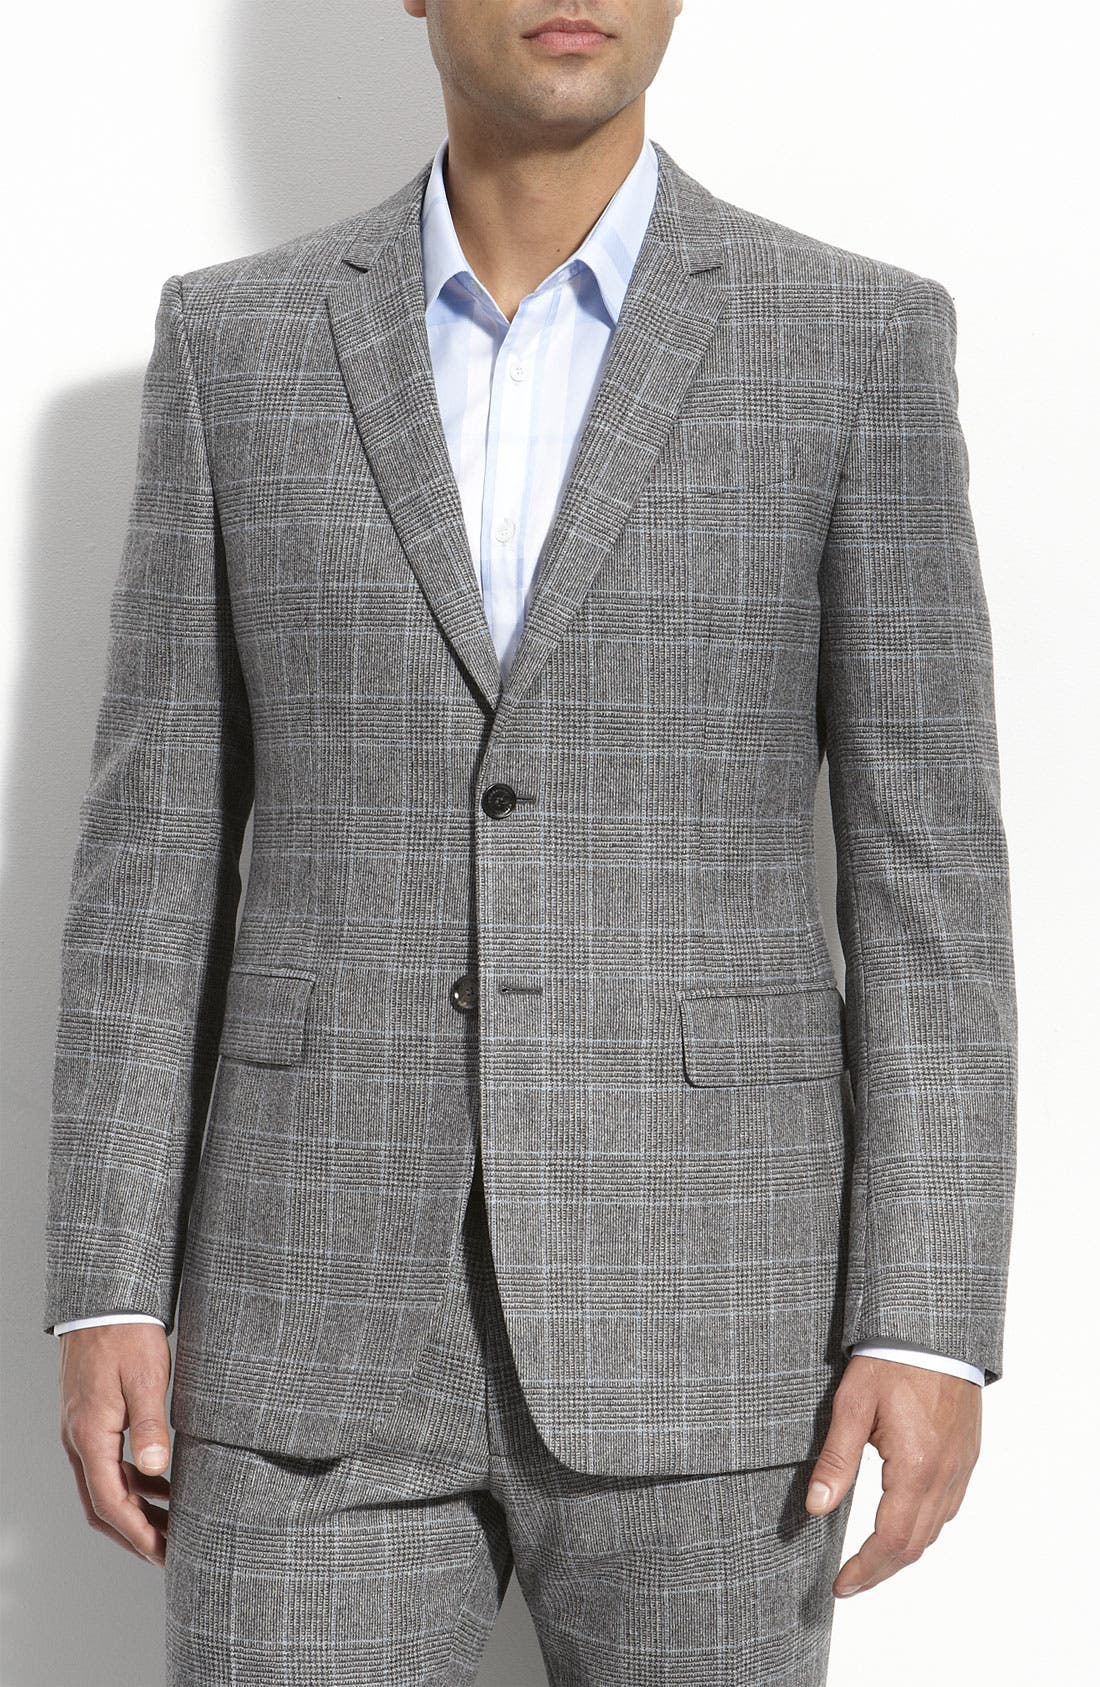 burberry plaid suit